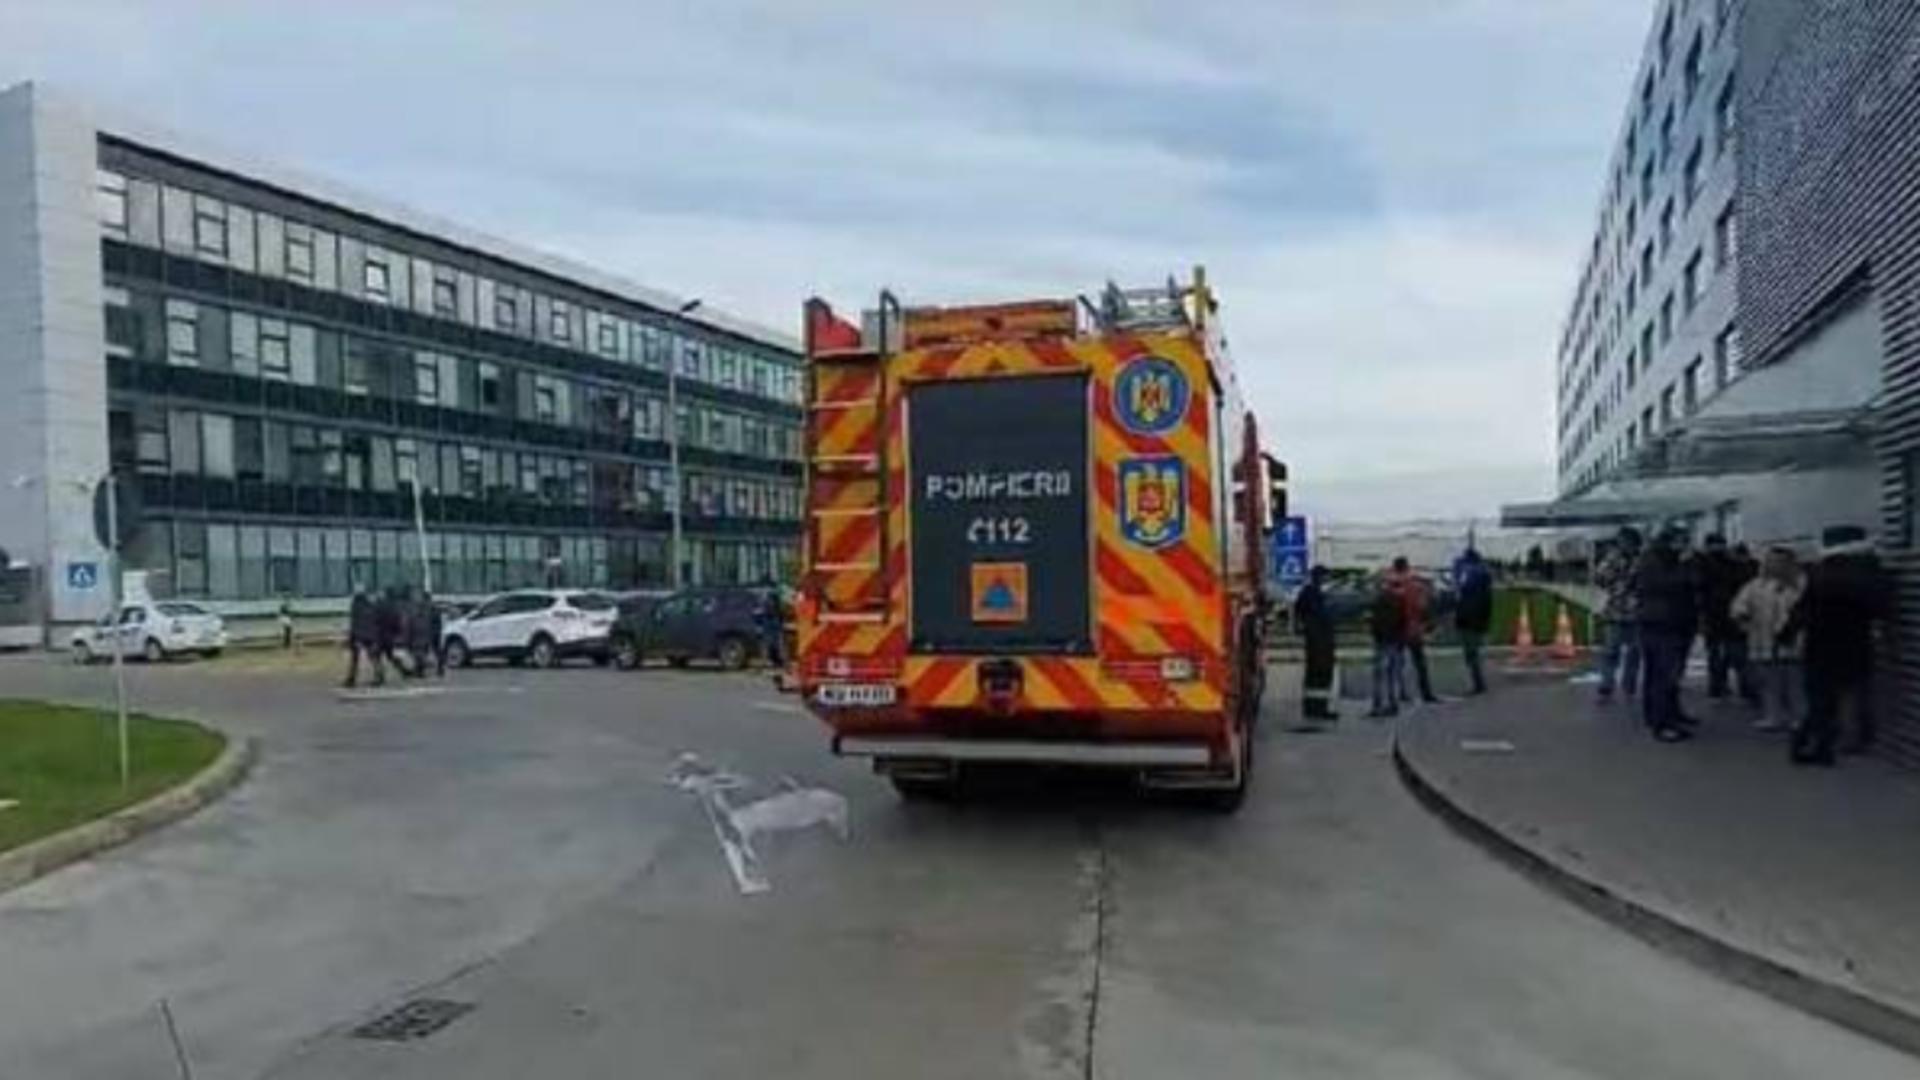 Alertă după o amenințare cu bombă la sediul unei multinaționale din Timișoara. 2.000 de oameni, evacuați! – VIDEO